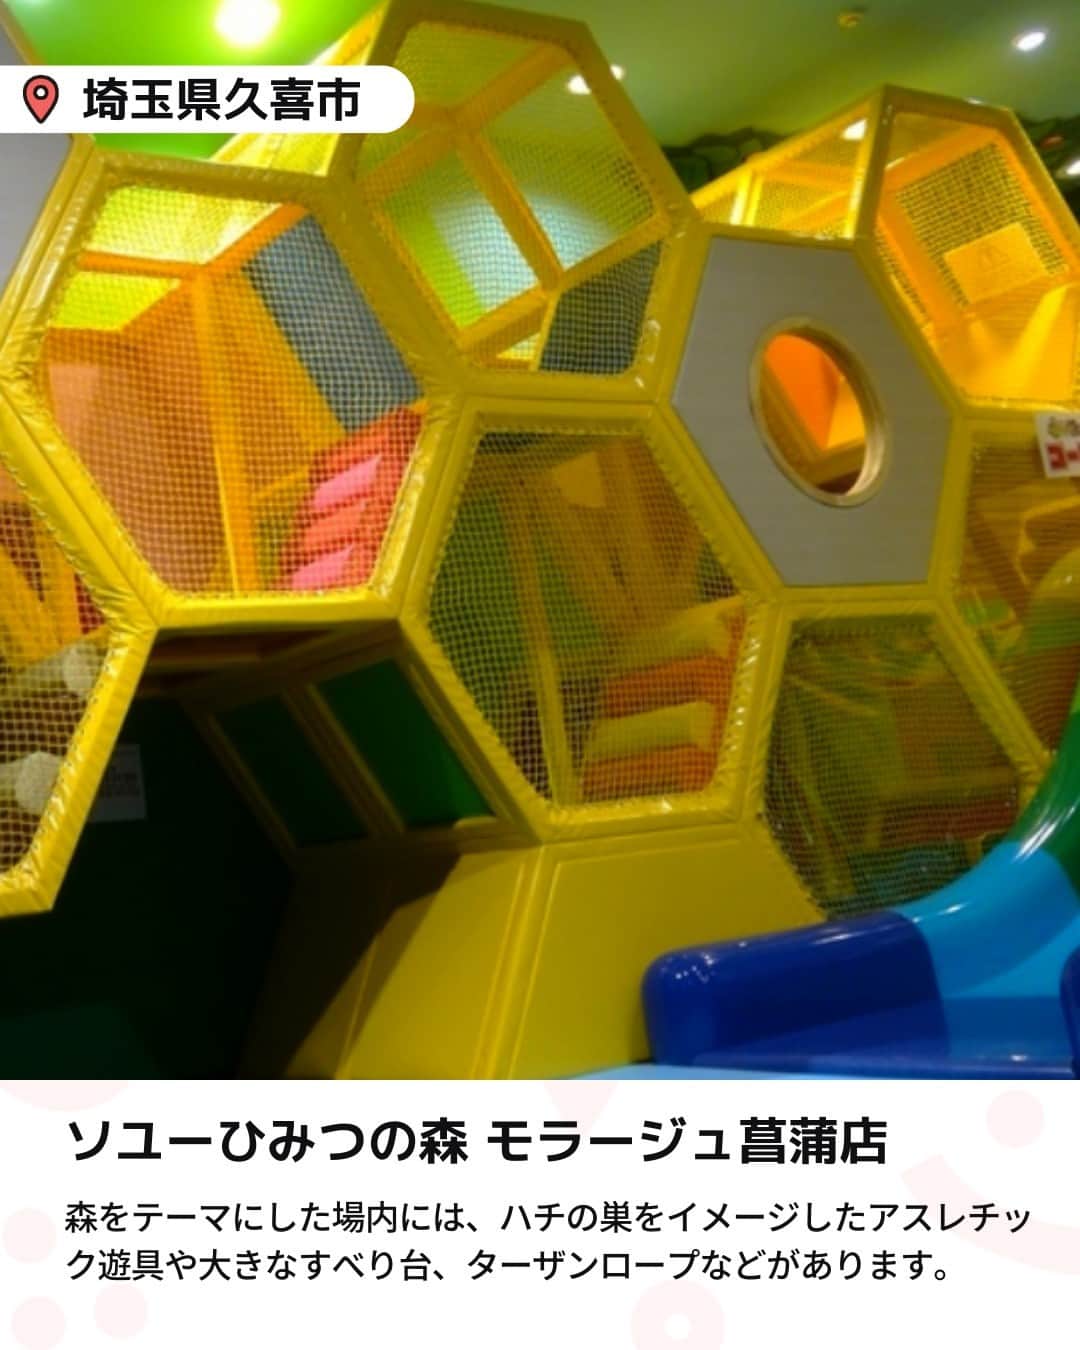 iko-yo（いこーよオフィシャル）さんのインスタグラム写真 - (iko-yo（いこーよオフィシャル）Instagram)「今回ピックアップしたのは「関東の人気屋内アスレチック 6選」 ーーーーーーーーーーーーーーーーーー 📍東京都八王子市 【CROSPO（クロスポ）八王子店】 時間内遊び放題で様々なアクティビティが楽しめる屋内施設で、トランポリンやボルダリングのほか、高さ9メートルの巨大クライミングタワーや、超本格的アスレチック「マッスルチャレンジ」など、思いきり体を動かして遊べるアクティビティが盛りだくさん。 0歳から10歳までの子供が安心して楽しめるキッズコーナーでは、大型ネット遊具や乗り物遊具などで楽しめます。  📍東京都日野市 【京王あそびの森 HUGHUG】 木のぬくもりがたっぷりと感じられる遊具が豊富な国内最大級の屋内遊び場です。 高さ約12m・直径約15mの巨大ネット遊具「ハグハグのき」は、そのスケールの大きさだけではなく、ネット上に雲のチューブやバランスボールなどの仕掛けもあり、子供たちに大人気です。 ほかにも、約45,000個のボールに埋もれて遊べる巨大ボールプールや、ボルダリングウォールなどもあり、館内の各所で体を思いきり動かして遊べます。  📍 東京都世田谷区 【PLAY! PARK ERIC CARLE（プレイパーク エリック・カール）】 エリック・カールの描く絵本の世界観をテーマとした、国内初のインドアプレイグラウンド施設です。 子供の好奇心をくすぐる多彩なエリアがあり、なかでもスウェーデン・HAGS社製の大型アスレチック遊具がある「Play Zone」では、思いきり体を動かして遊べます。  📍 埼玉県川口市 【ASOBooN（アソブーン）】 全国各地の遊び場をプロデュースしている「ボーネルンド」が手掛けた、子供が夢中で楽しめる工夫が満載の施設です。 特色の異なる7つのエリアがあり、ダイナミックに遊べるアスレチック遊具や弾むマットで走り回れるエアトラック、円形の透明なチューブの中に入って転がるサイバーホイールなど、思いきり体を動かして遊べます。 平日は時間無制限で入退場自由なので、隣接する公園や、レストラン・カフェ・売店でのお食事など、一日中楽しむことができます。  📍 埼玉県久喜市 【ソユーひみつの森 モラージュ菖蒲店】 森をテーマにした場内には、ハチの巣をイメージしたアスレチック遊具「ひみつバチの巣」があり、内部を上ったり下りたりして楽しめます。また、大きなすべり台やターザンロープもあり、思いきり体を動かせして遊ぶことができます。 ほかにも、大きなボールプールなども備えていますので、比較的低年齢の子供たちも楽しめます。  📍埼玉県越谷市 【あそびパークPLUS ナムコイオンレイクタウン店】 体を動かしたり砂浜気分で砂遊びができたりと、屋内ながら外遊び気分が味わえるのが魅力のスポットです。 場内には、思いきり体を動かして遊べる大型アスレチック遊具「森のアスレチック」に加え、デジタル技術を駆使して、木に登っての虫採りを疑似体験できる「屋内木のぼり 森の子」もあって、森で遊ぶような感覚で楽しめます。飛んだり跳ねたりして遊べる「イマジネーションヒルズ」もおすすめです。  ※2023年5月10日時点の情報です。 最新の情報は公式HPや「いこーよ」サイトでご確認ください。 ーーーーーーーーーーーーーーーーーーー おでかけ情報量は日本最大級！ 子どもとお出かけ情報サイト「いこーよ」 「親子でおでかけしたい場所」をご紹介させていただいています！  お子さんとのおでかけの思い出の写真を、このアカウントをフォローの上#いこーよ #いこーよおでかけ部 をつけてぜひ投稿してください。魅力的な写真は、いこーよ公式SNSで紹介させていただきます！  募集中タグ#いこーよ #いこーよおでかけ部  「子どもと行きたい！」と思ったら保存が便利！ プロフィールのURLから「いこーよ」のサイトに行くと、他の投稿やオトクな情報などが載っています♪ ☞ @ikoyo_odekake  #いこーよ #お出かけ #おでかけ #お出かけスポット #子連れ #こどものいる暮らし #子連れスポット #いこーよおでかけ部 #東京ママ#東京観光#東京旅行#埼玉ママ #埼玉観光 #埼玉旅行#屋内アスレチック#関東アスレチック#クロスポ八王子店#京王あそびの森 #playparkericcarle#asoboon#ソユーひみつの森#あそびパークplus」5月16日 19時01分 - ikoyo_odekake